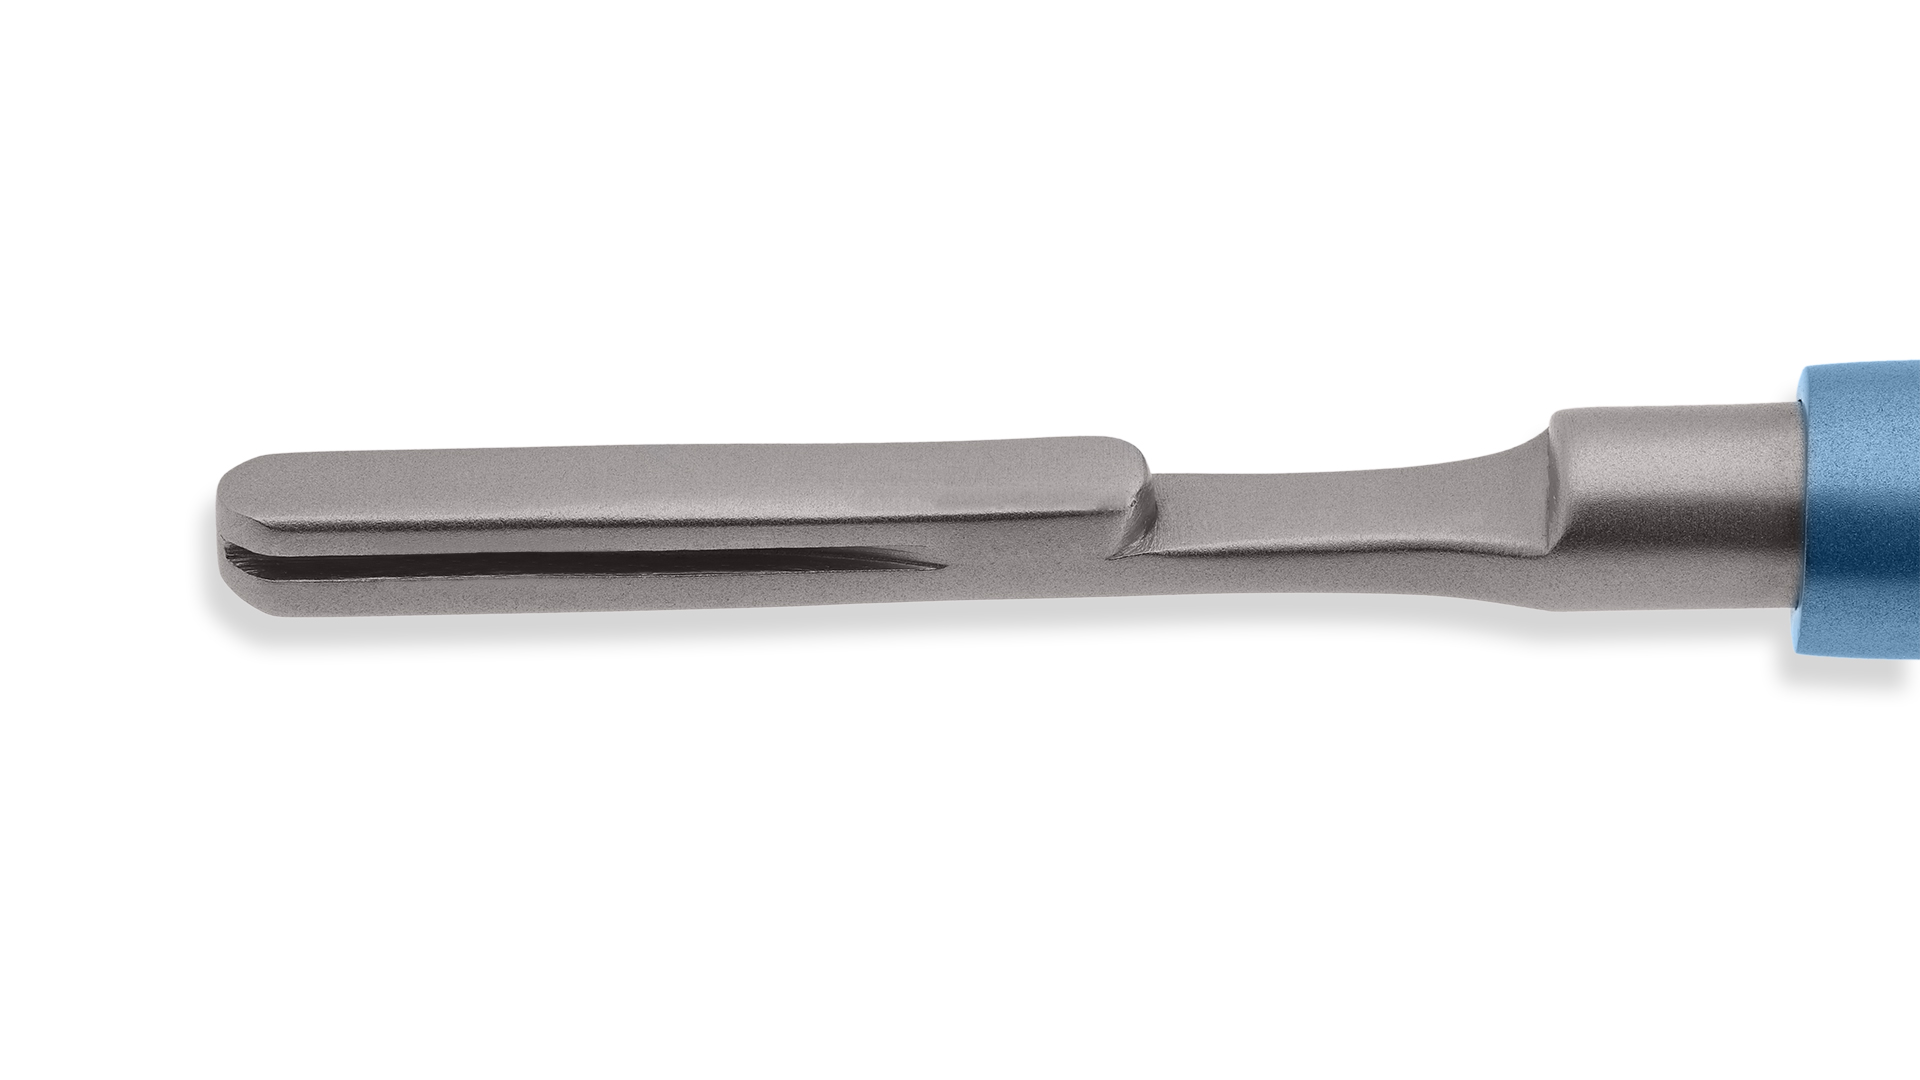 Scalpel Blade Holder - Stainless steel blade holder w/round titanium handle